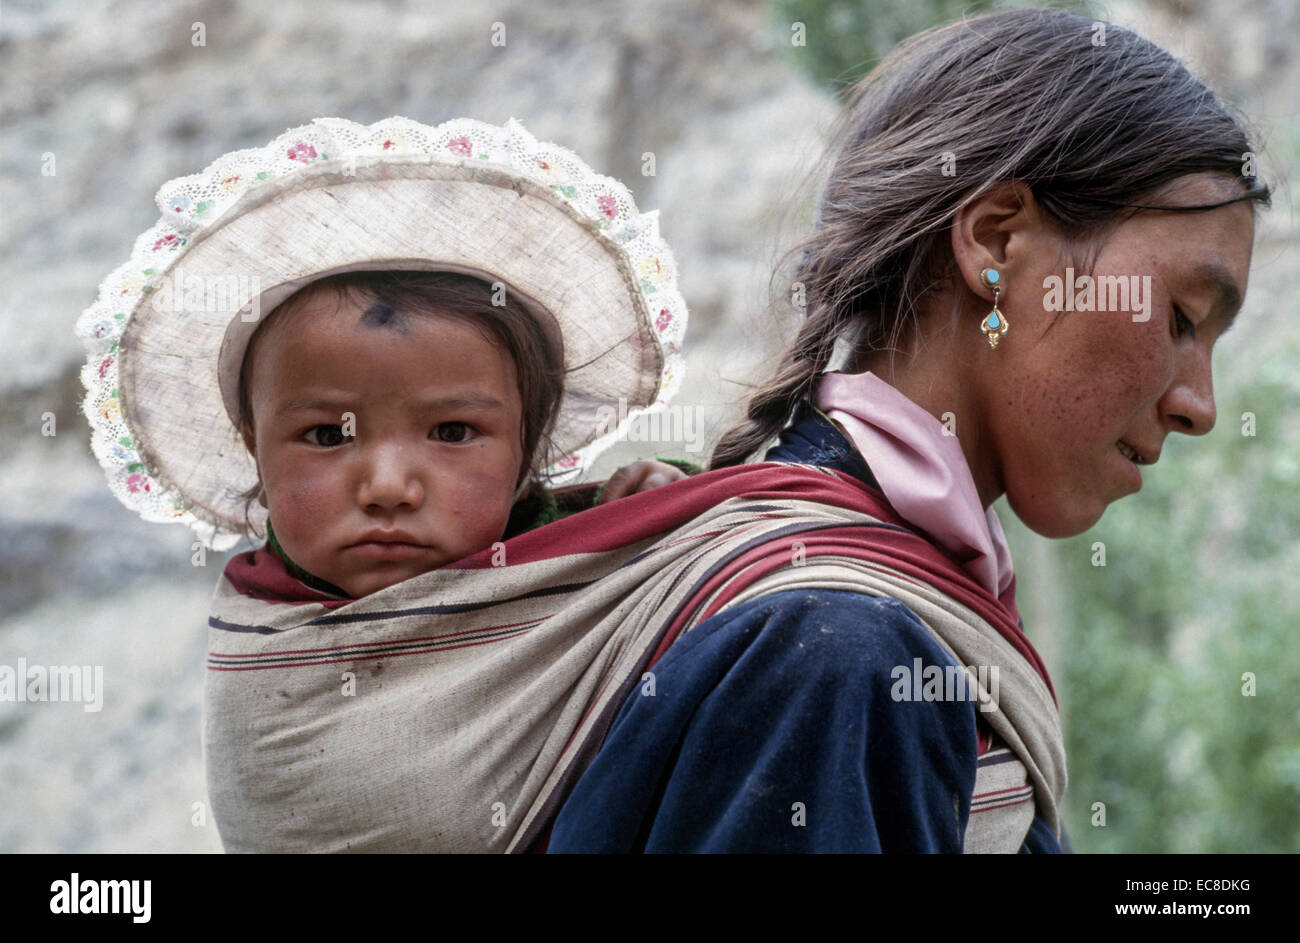 Ladakh-Mutter-Kind auf Rücken Sonne Hut getragen Tuch Papoose junge Frau dunkles Haar Kinderprofil Stockfoto